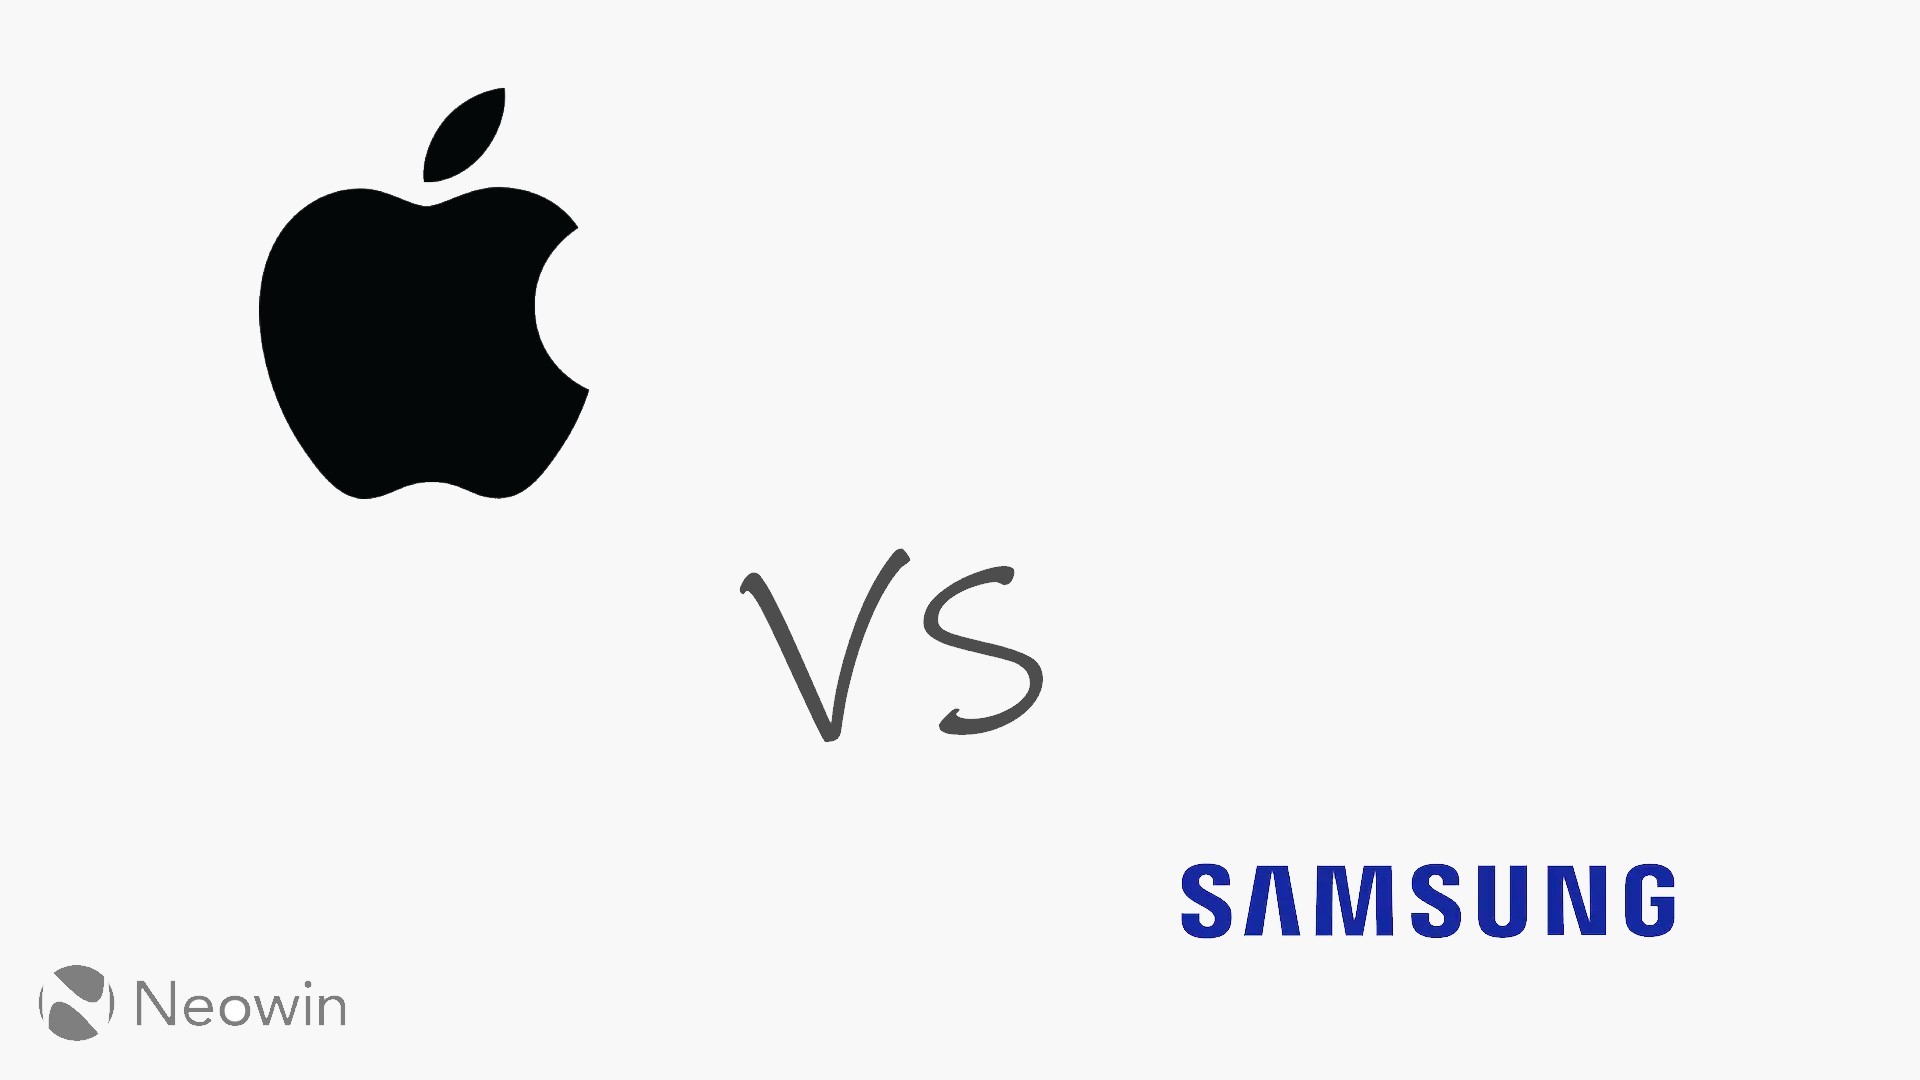 ลือ Samsung กำลังก่อตั้ง Dream Team โดยมีเป้าหมายเพื่อโค่น Apple M1 ลงให้ได้